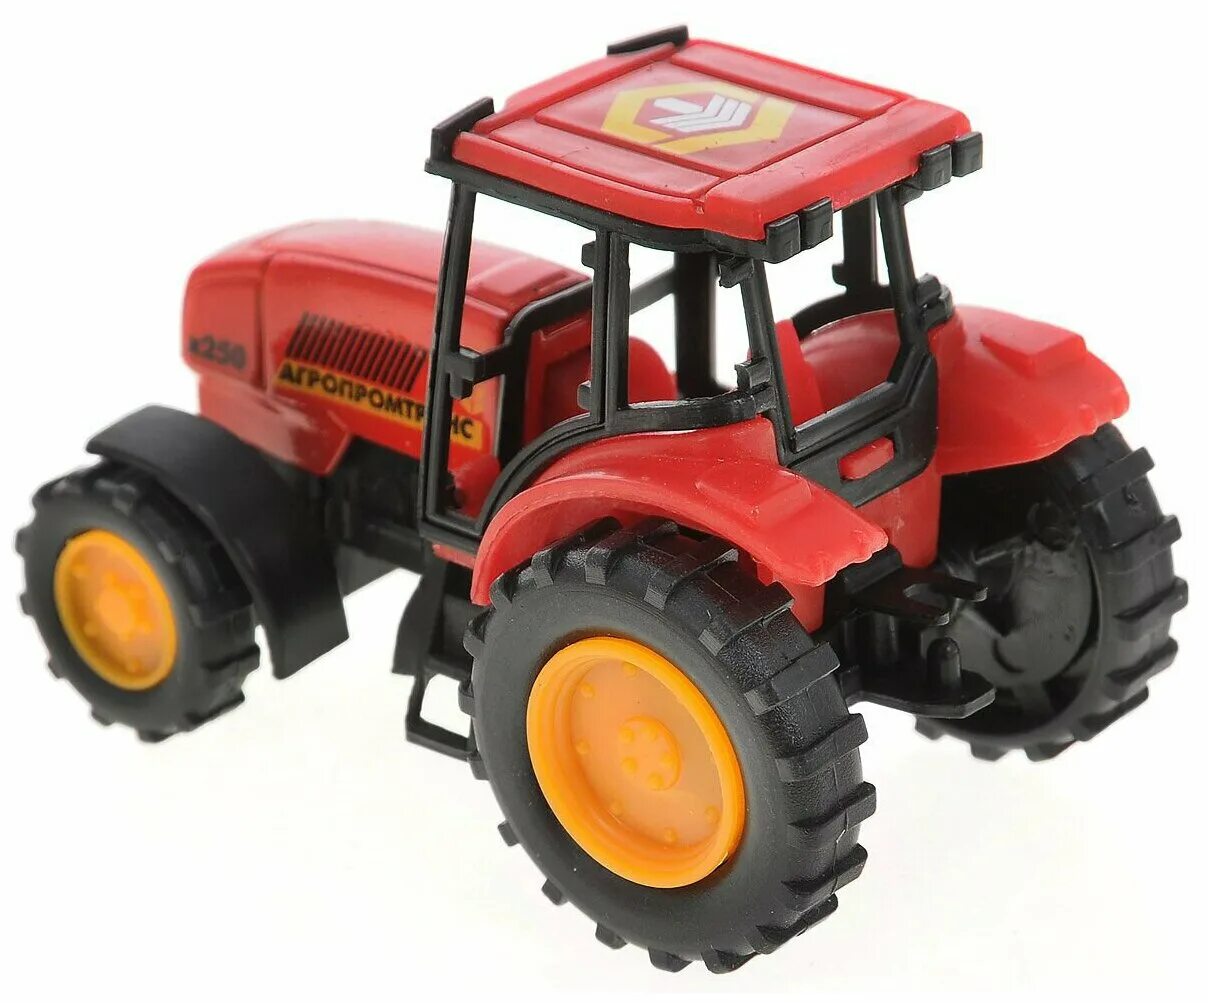 Купить трактор иваново. Трактор Технопарк Агропромтранс (20119-r) 7 см. Игрушки трактор красный Тайо. Игрушка трактор tractor красный. Игрушечные модели тракторов.